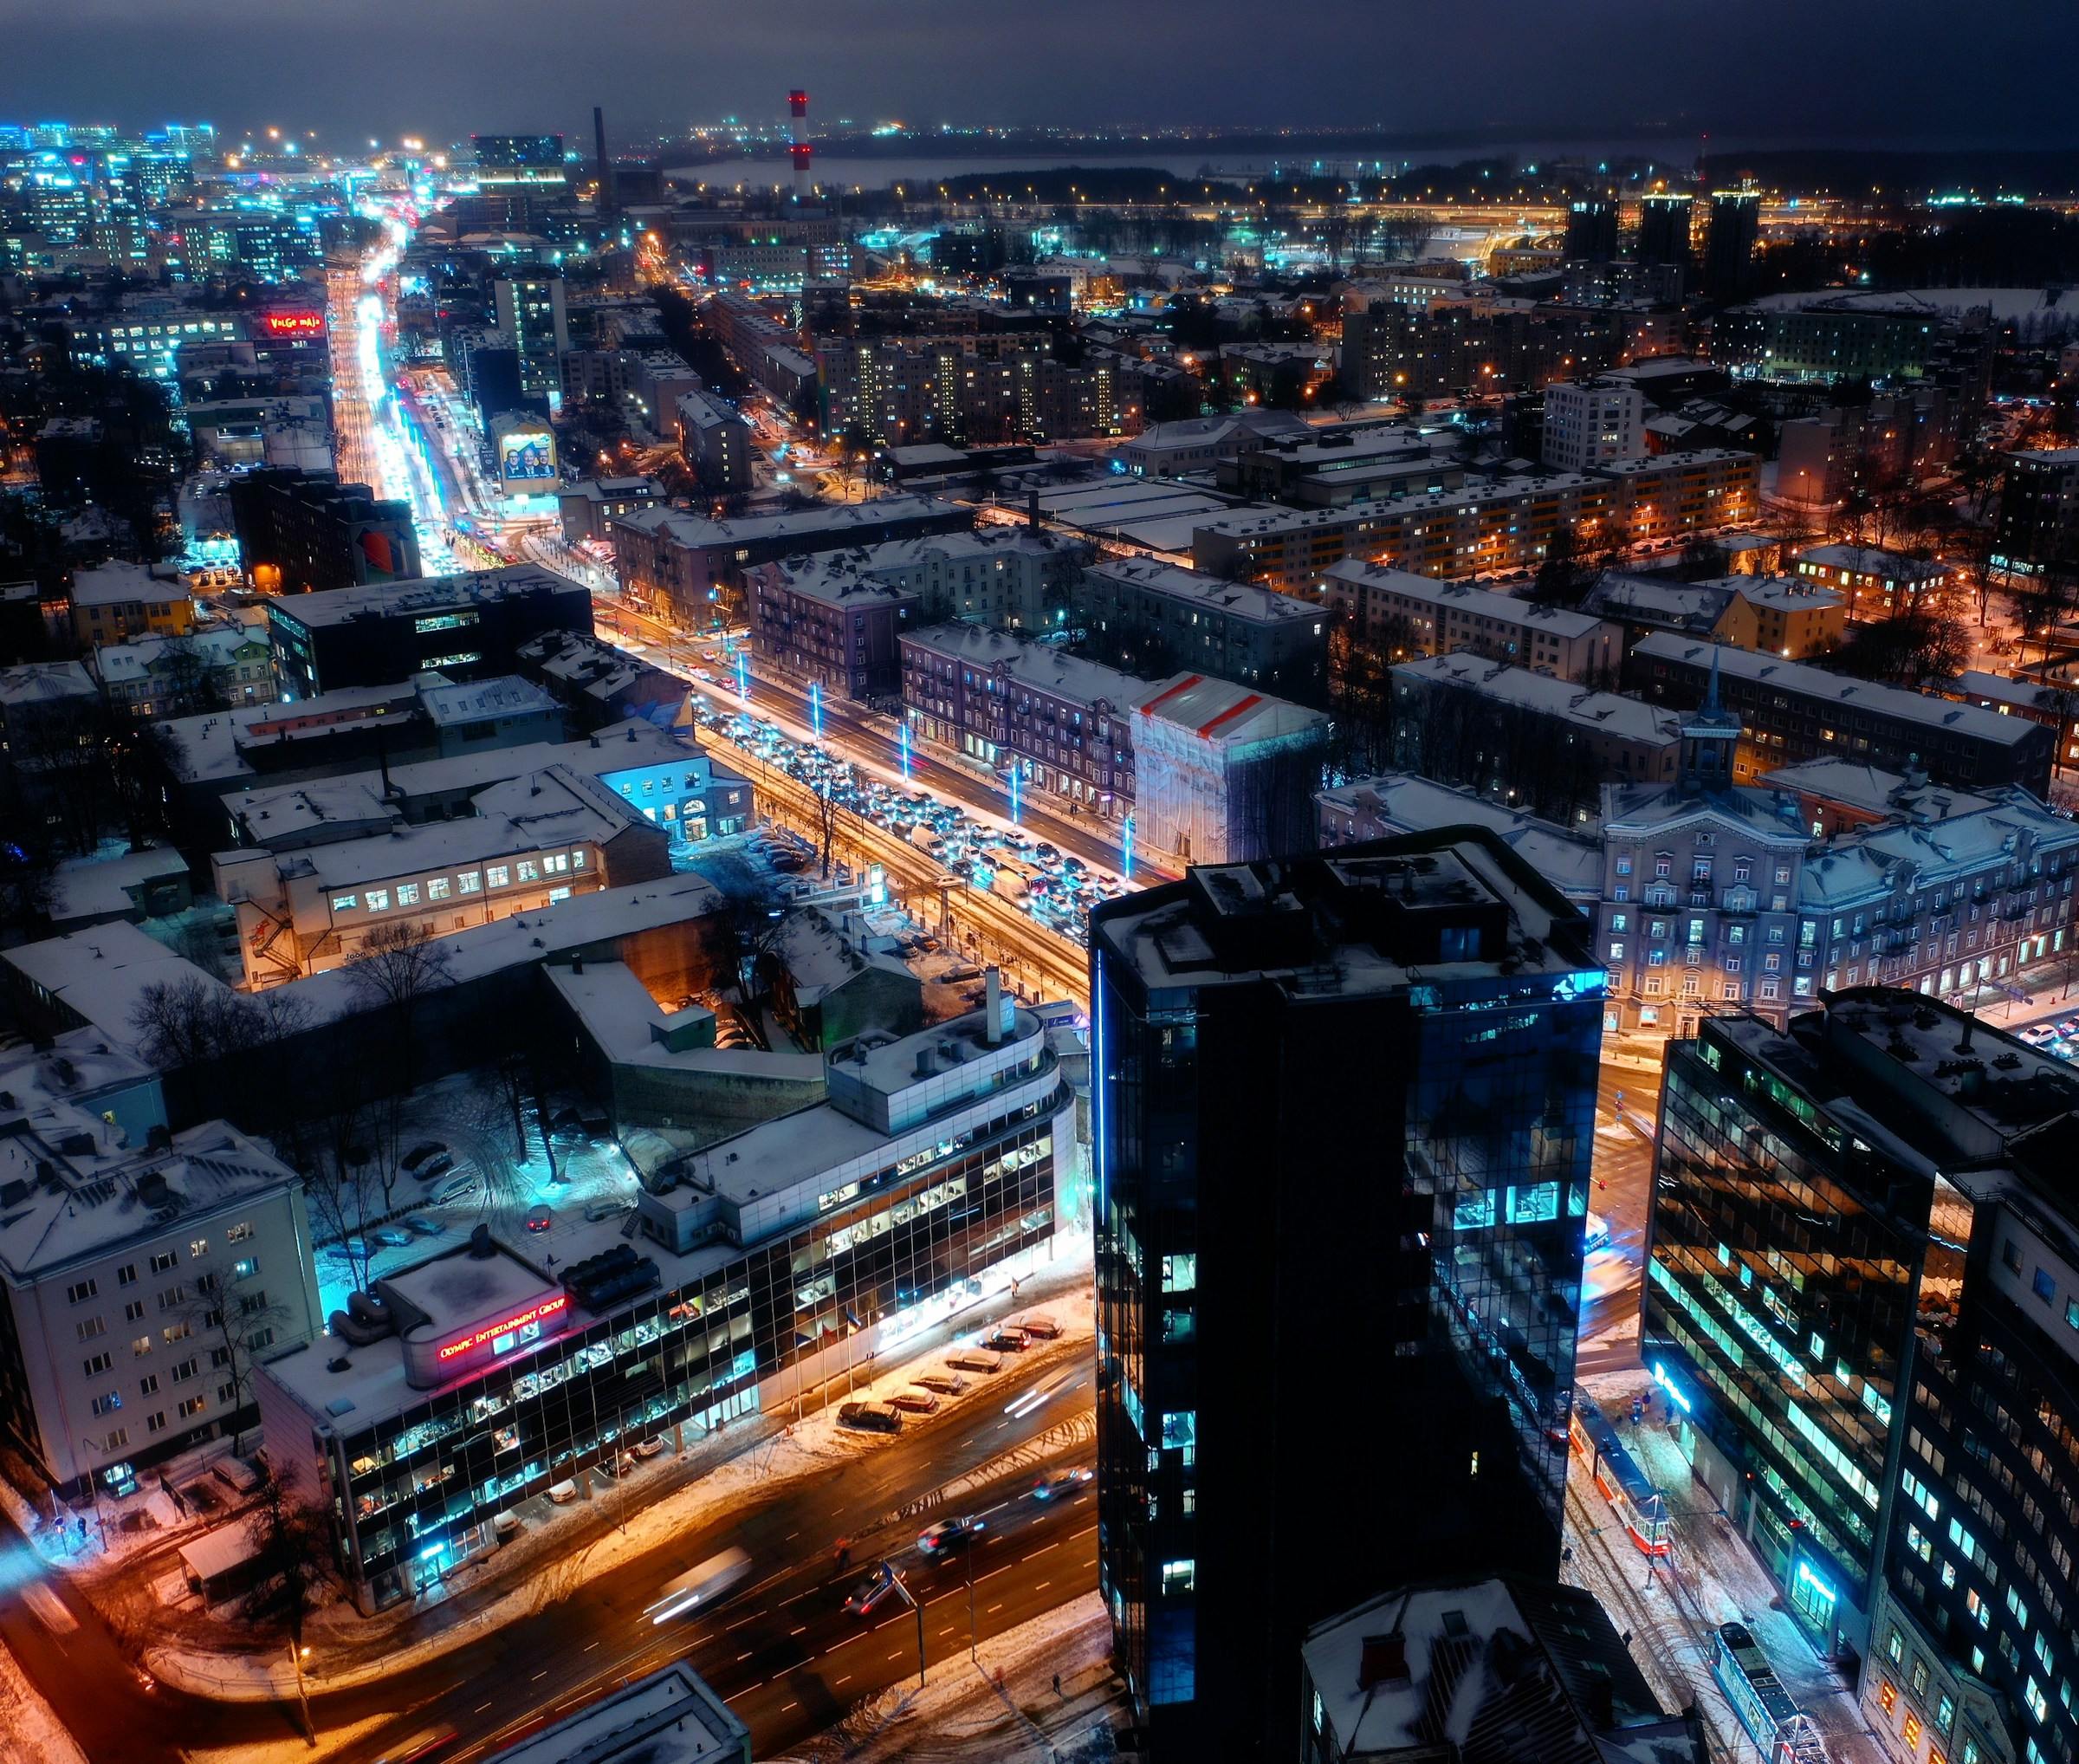 Flygfoto över en upplysta Tallinn på natten med gator som lyser i neon, snötäckta byggnader och aktiv trafik, som framhäver stadens liv och rörelse.